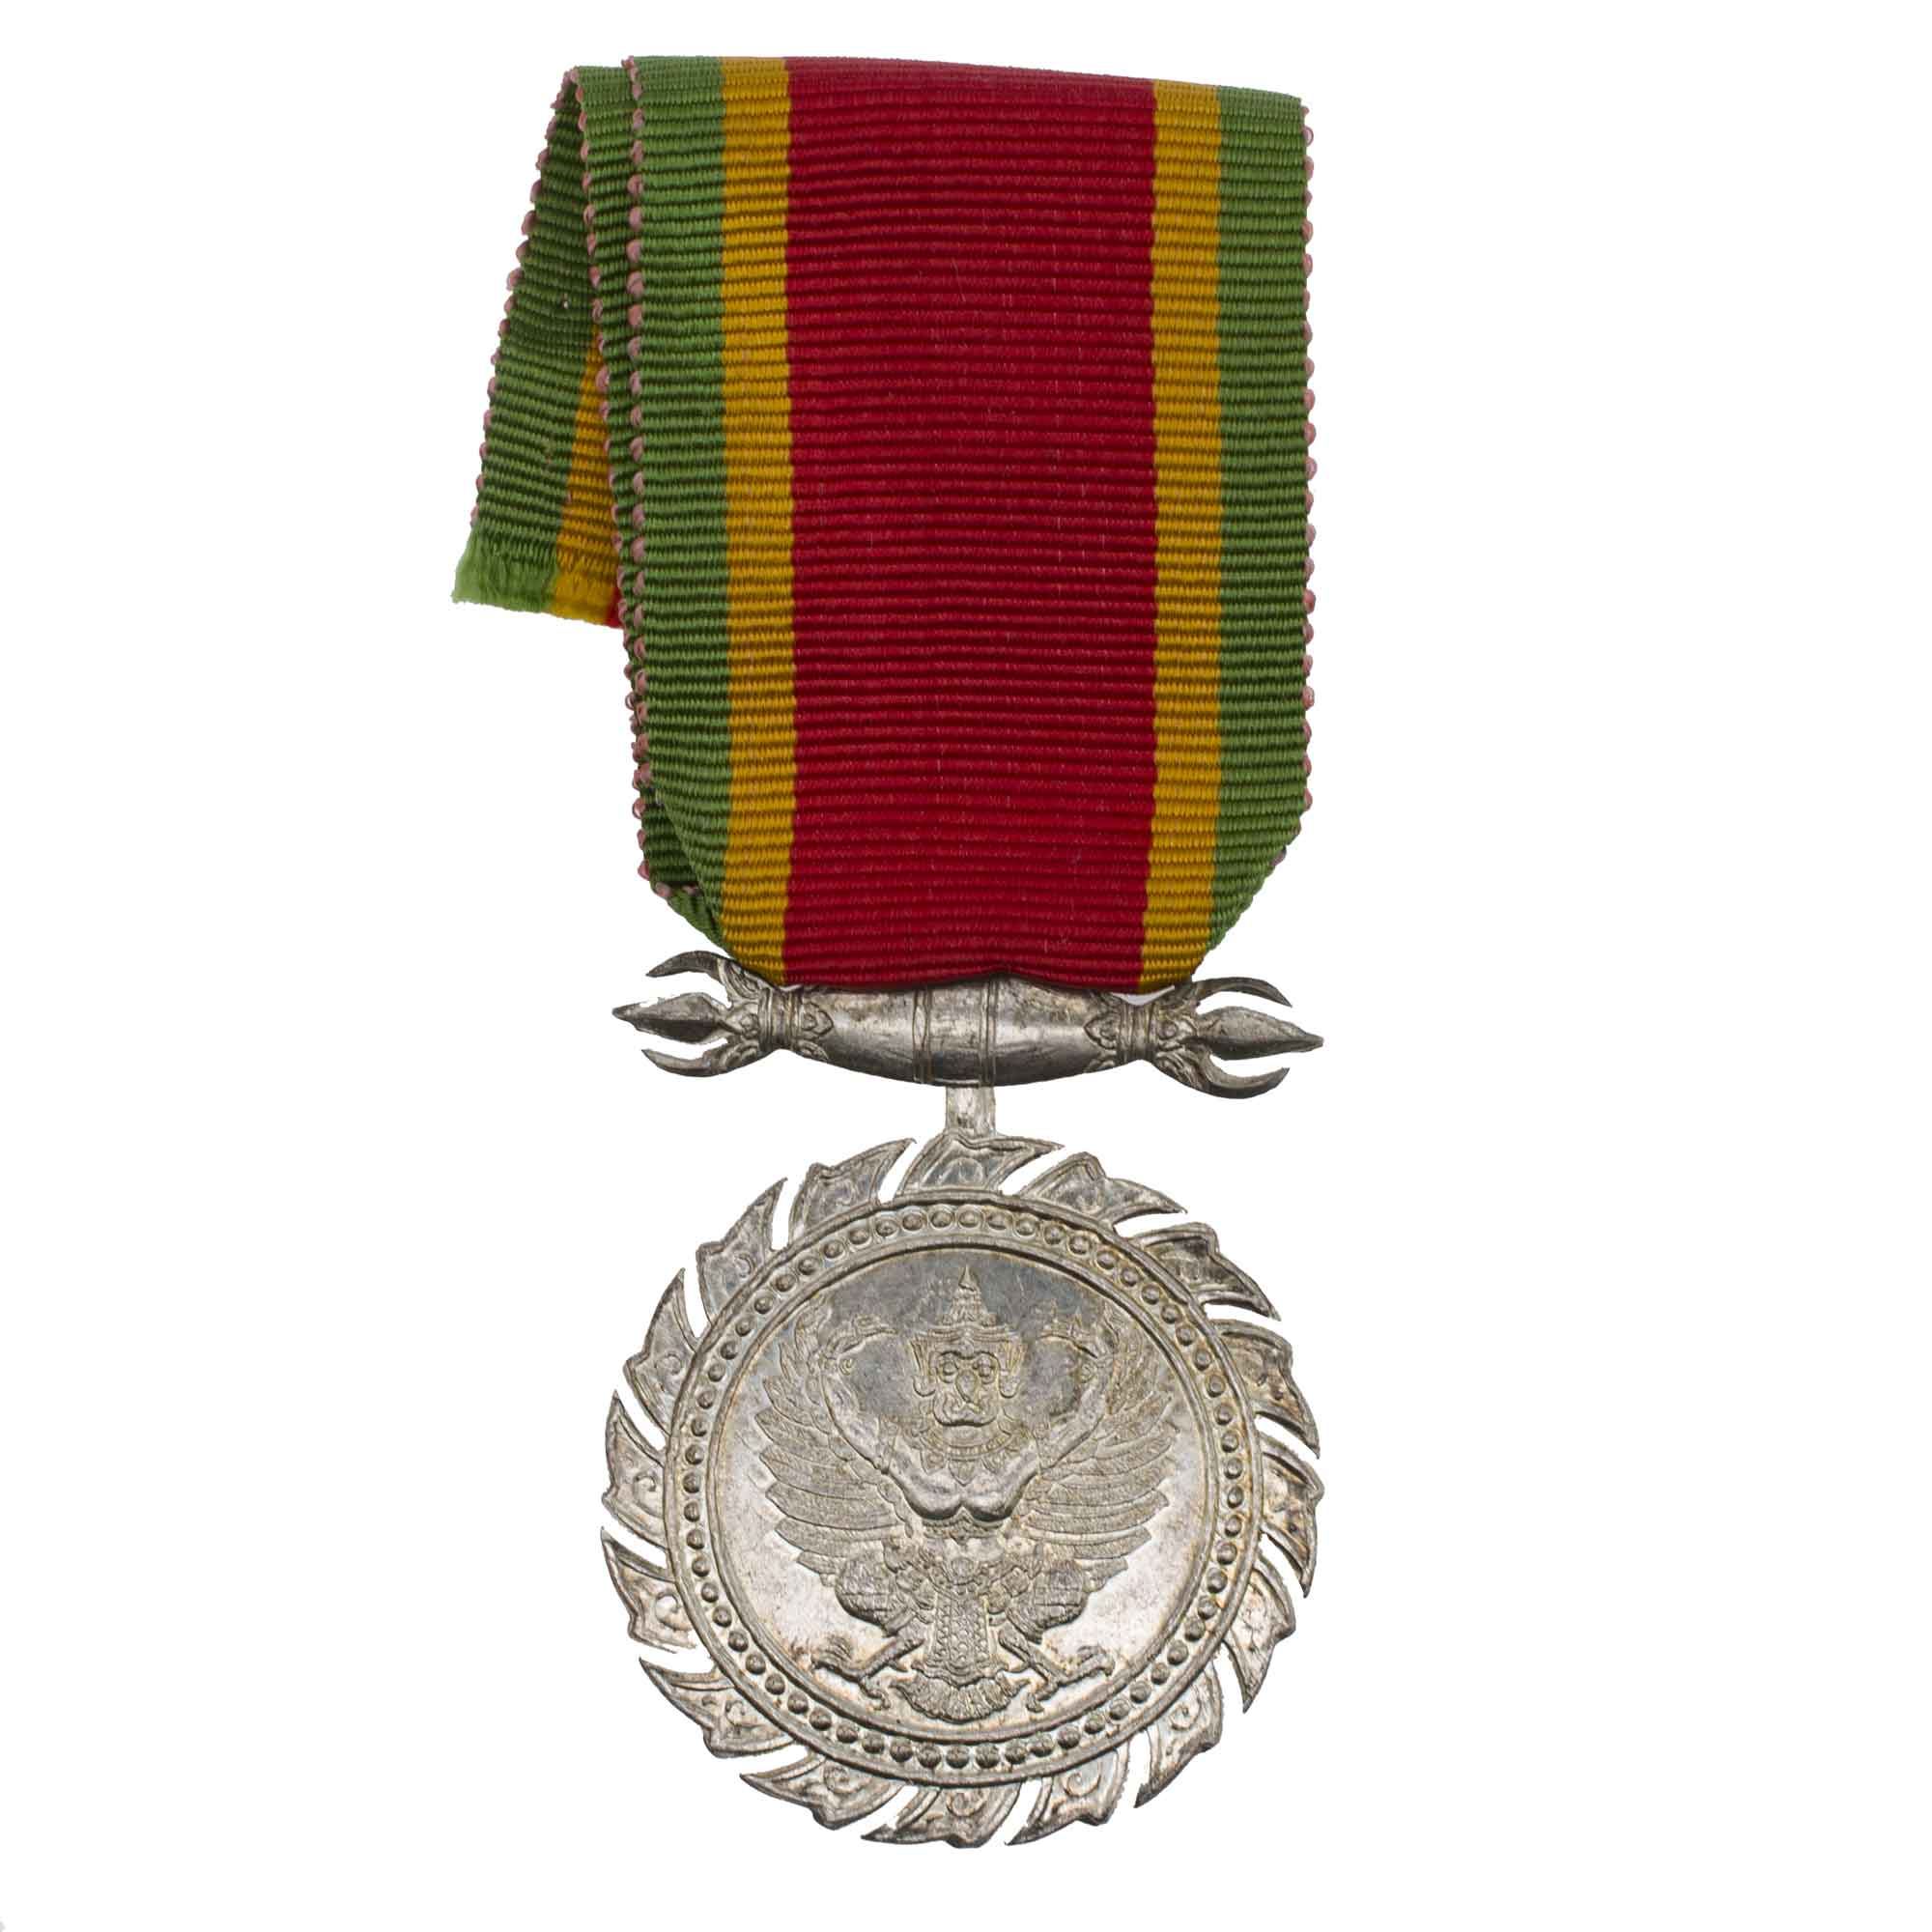 Тайвань. Медаль Чакрабарти Мала / Медаль "За долгую службу и хорошее поведение" № 371. В оригинальном футляре.